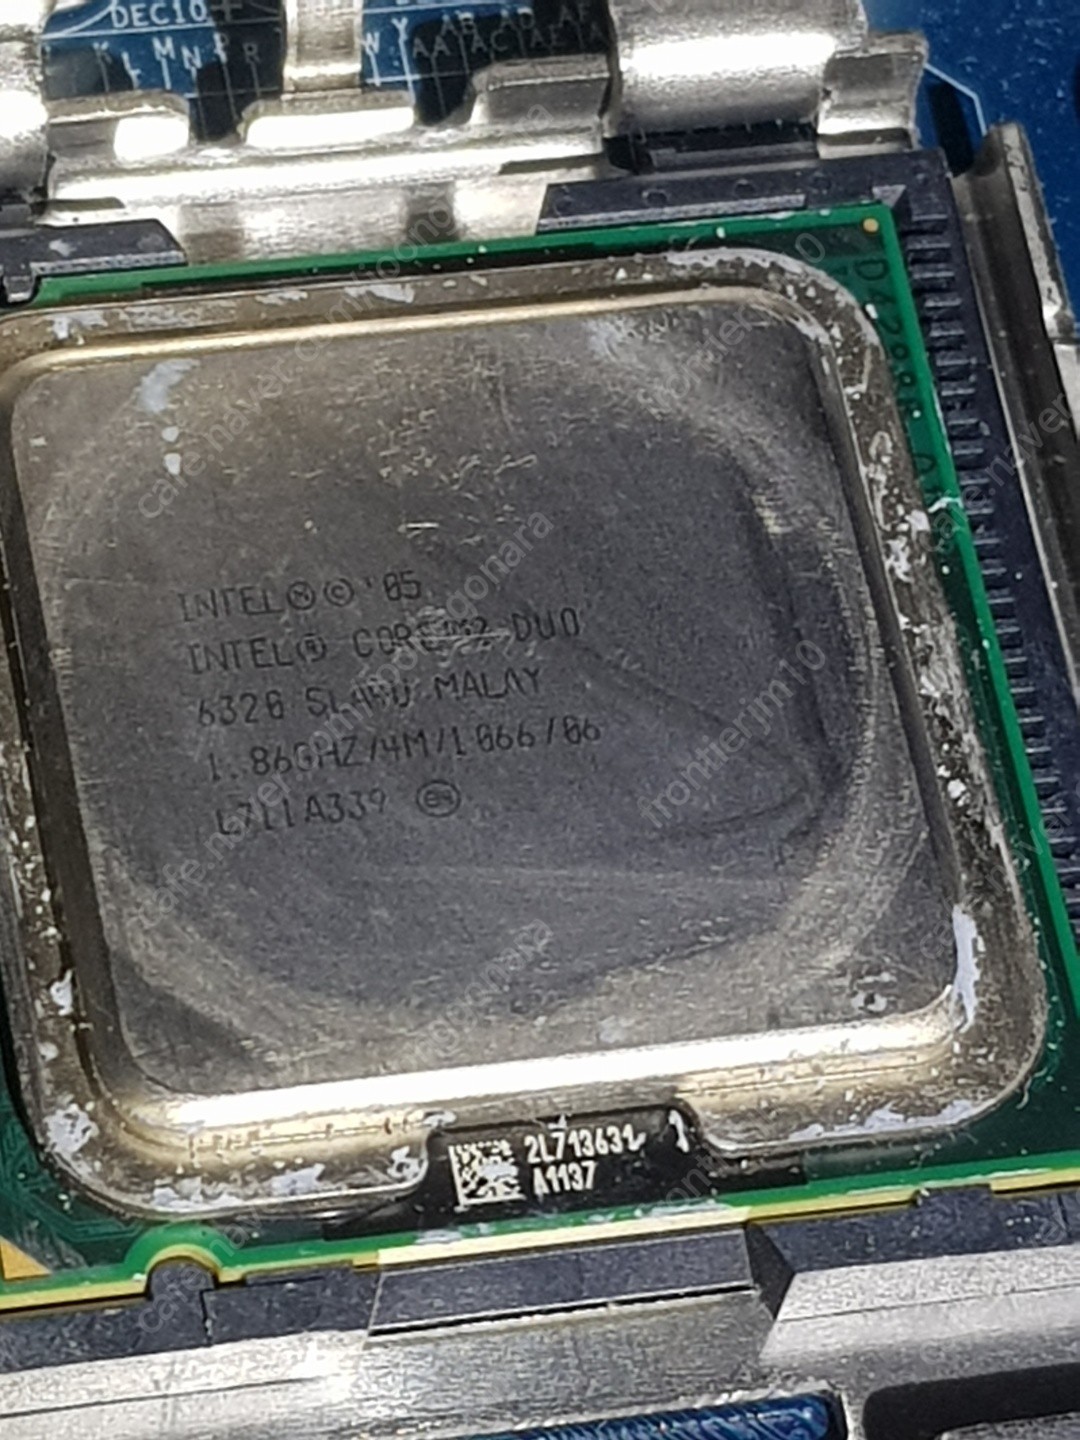 컴퓨터 부품 일괄 60,000원에 판매 합니다. (키보드(ANYZEN KM 6000U SE박스포함) + Intel Duo2 E6320 1.86 + 잘만 쿨러 + DDR2 1G(